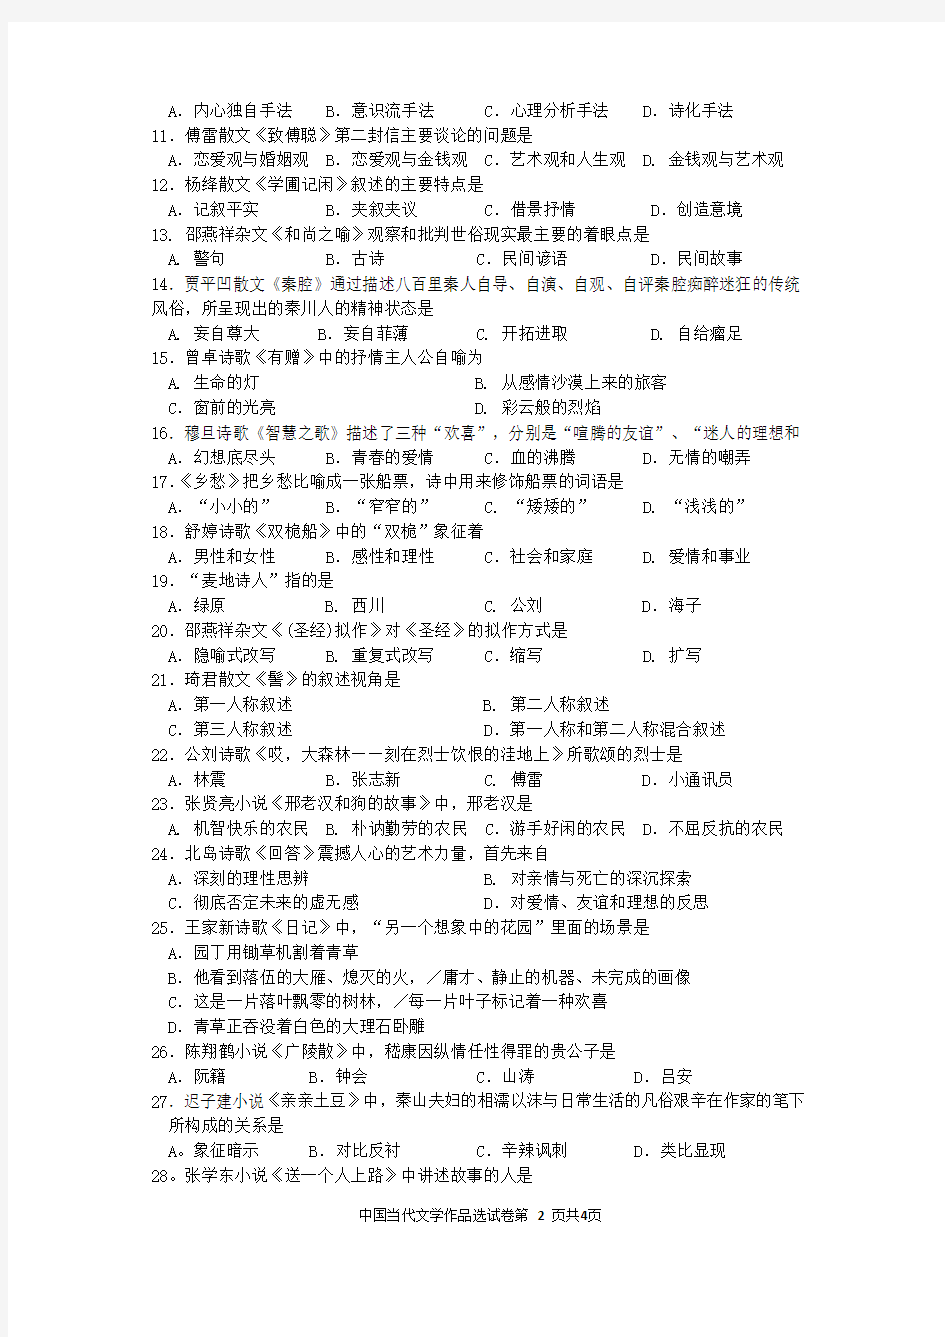 61自考中国当代文学作品选(00531)试题及答案解析与评分标准